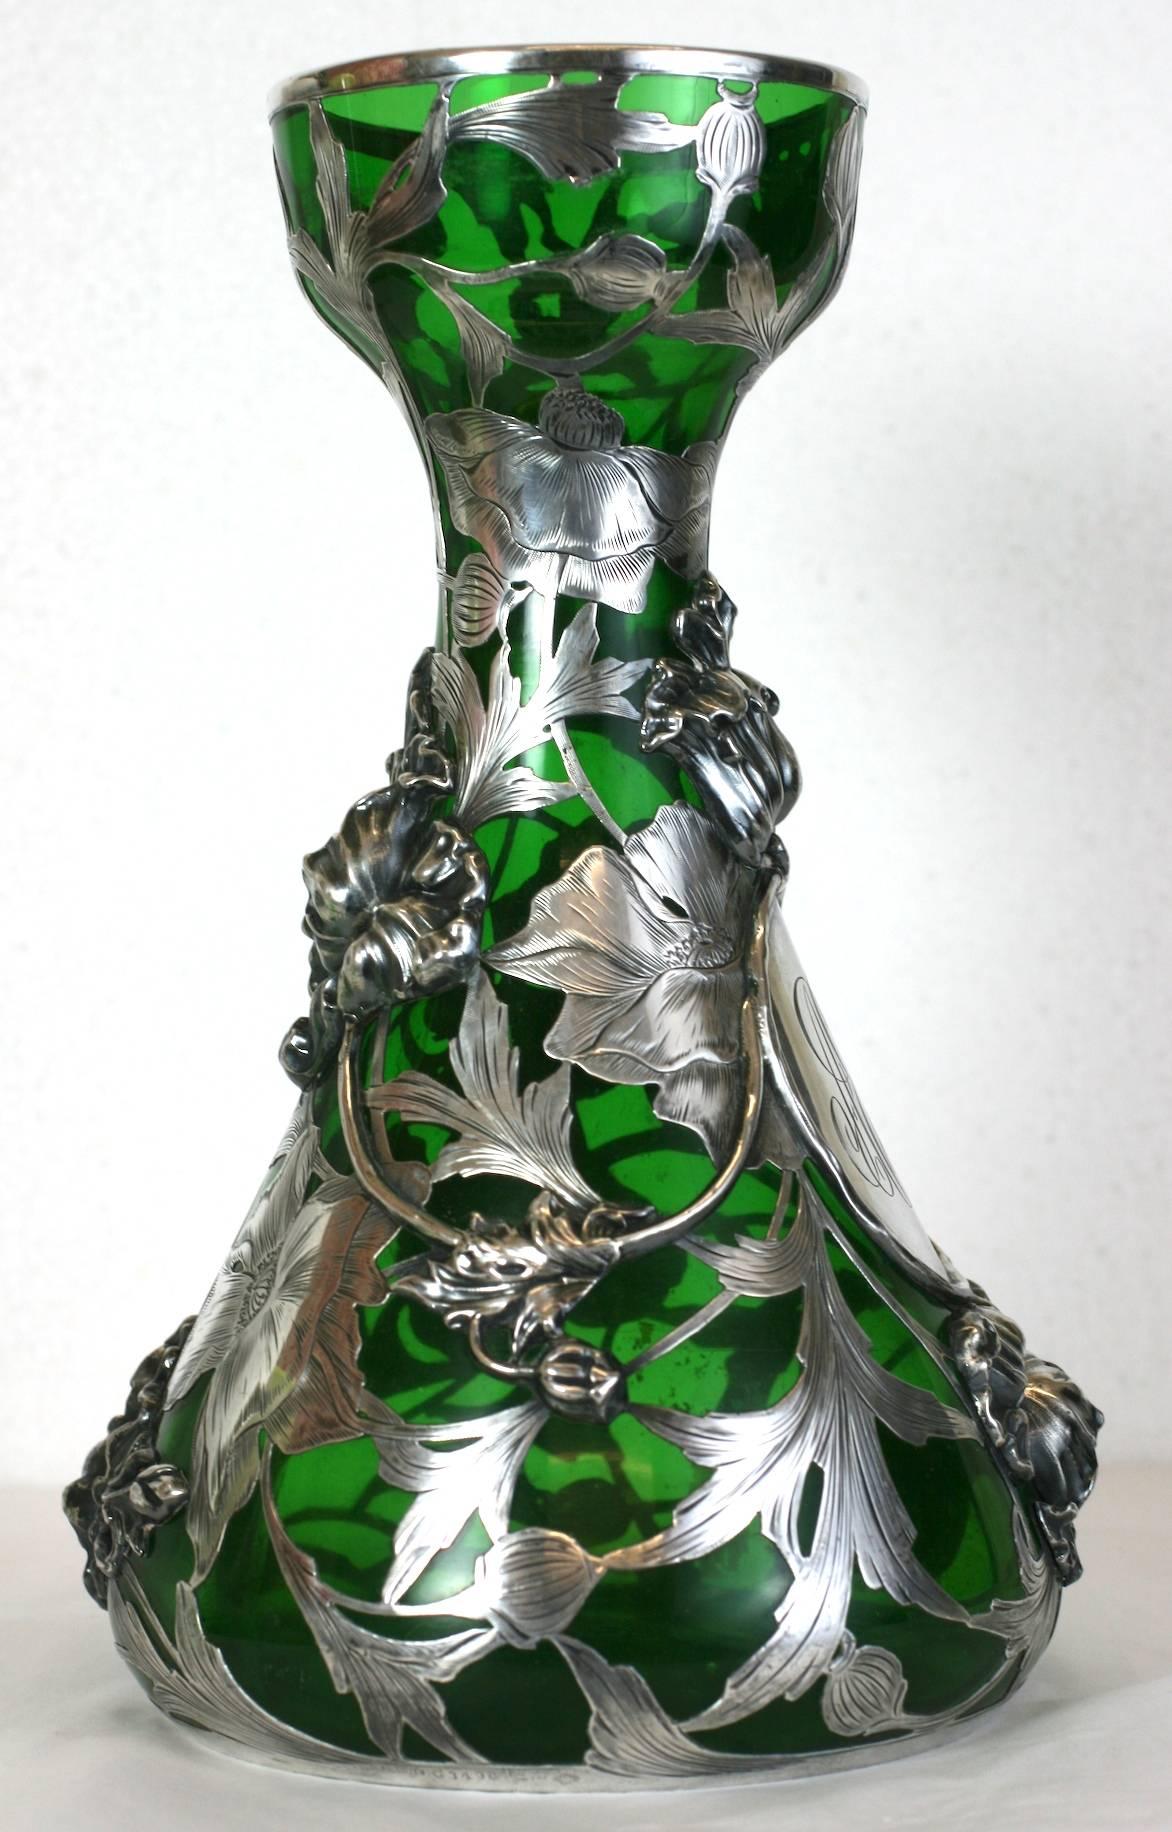 Exceptionnellement rare vase en argent recouvert par Alvin Mfg Co. de Providence Rhode Island datant de la fin du 19ème siècle. 
Ce vase est un tour de force de l'orfèvrerie Art nouveau sur verre. Le motif floral complexe de la base en argent est